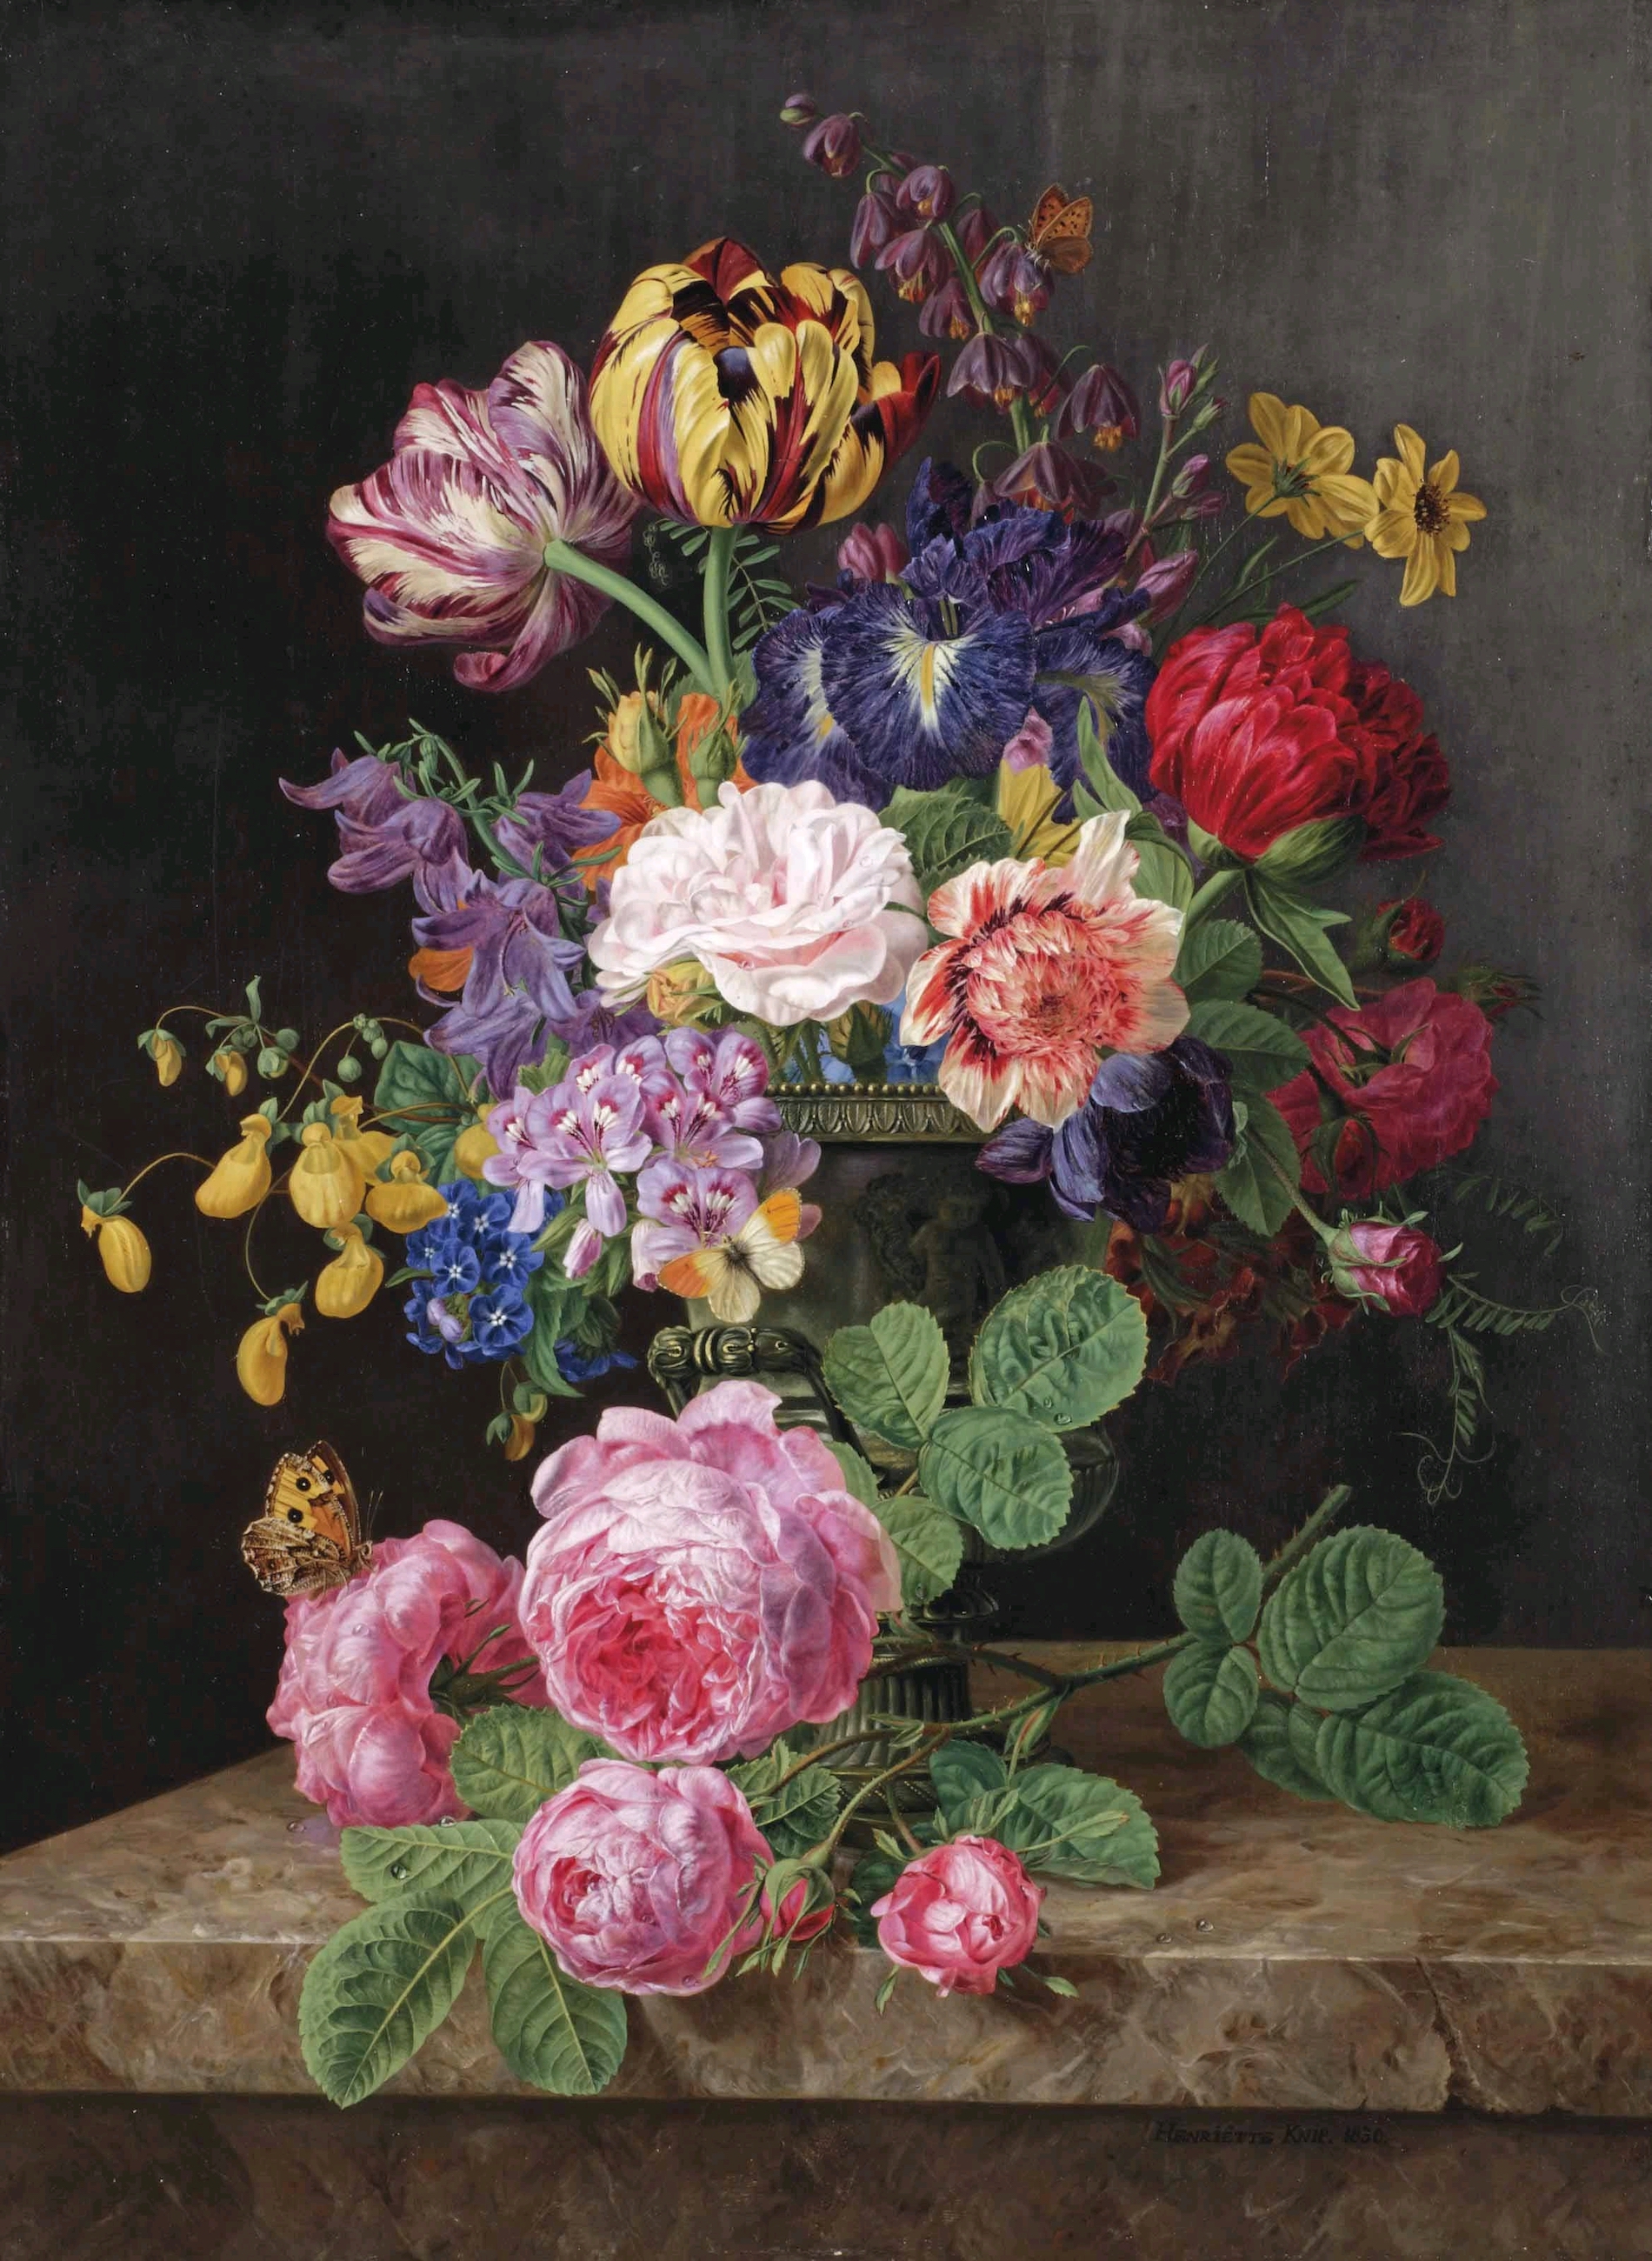 花瓶裏的花 by Henriëtte Geertruida Knip - 1830 年 - 57 x 42 釐米 